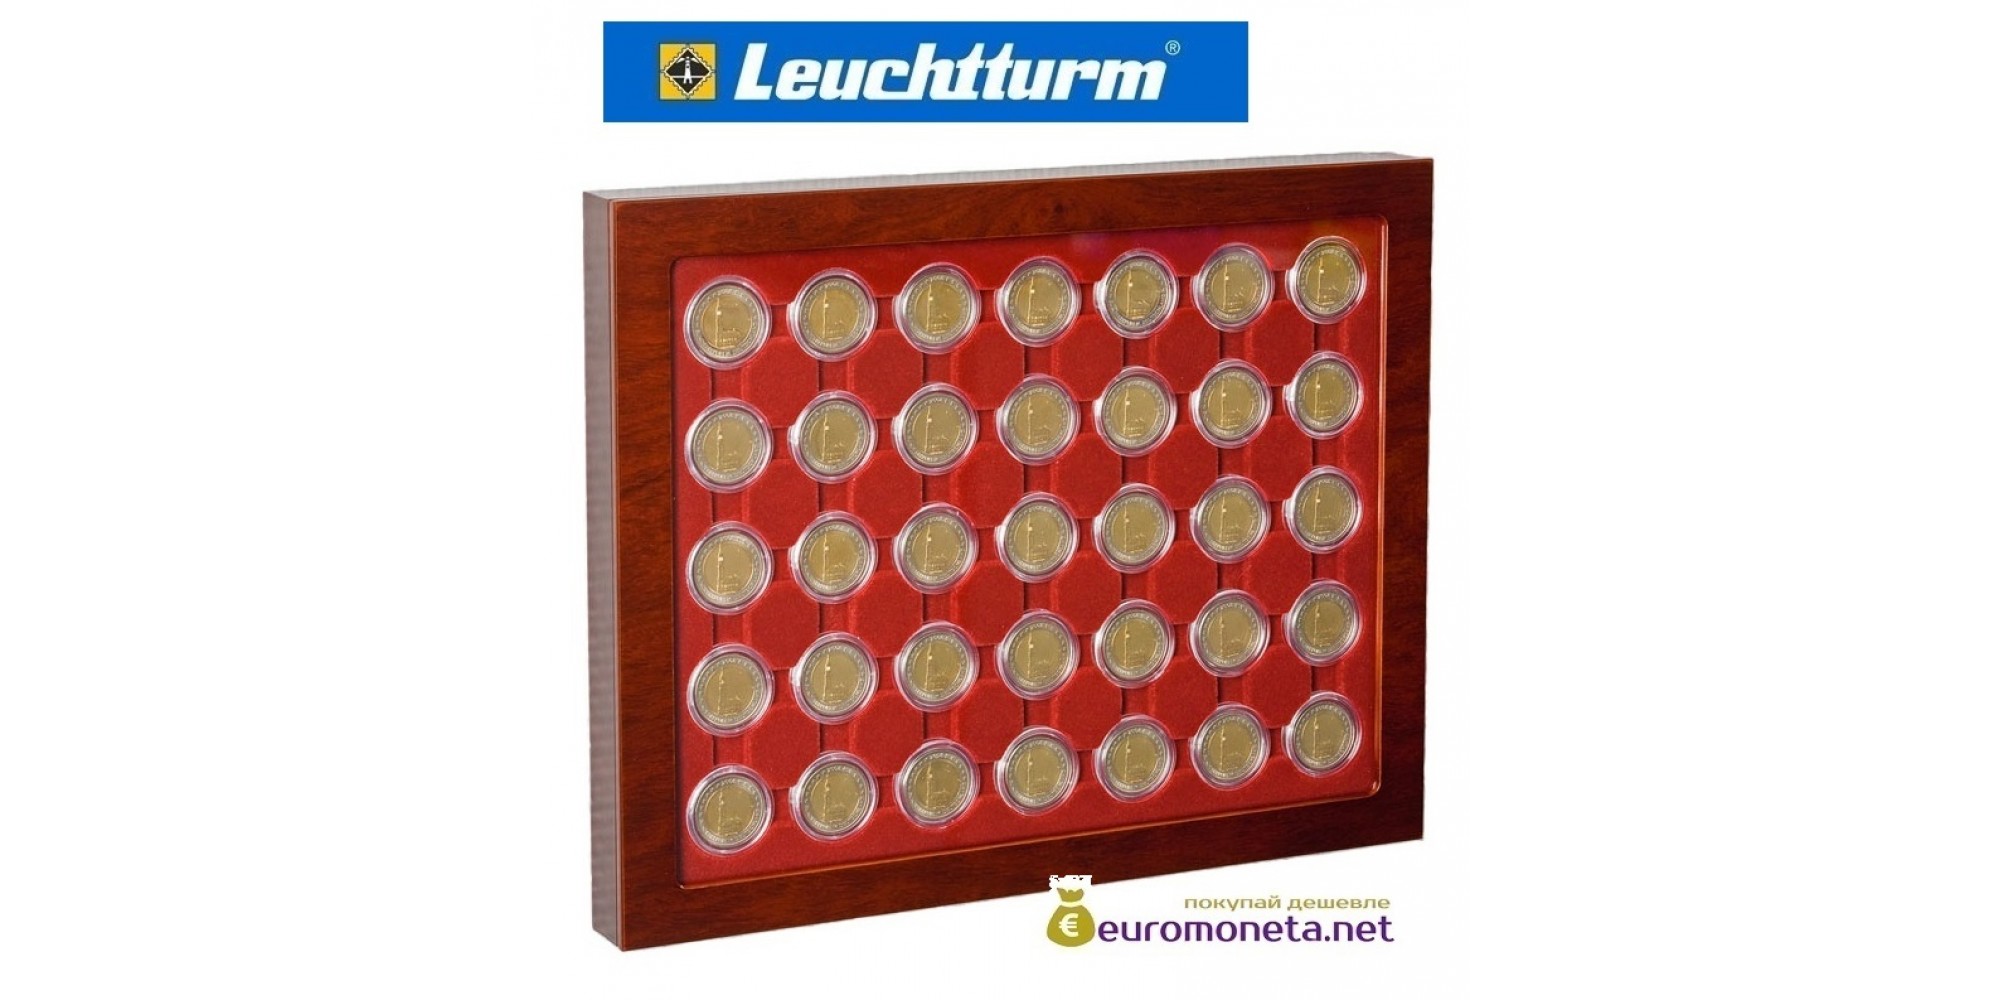 Leuchtturm рамка планшет для монет 2 евро в капсулах со стеклом, 35 ячеек, Германия